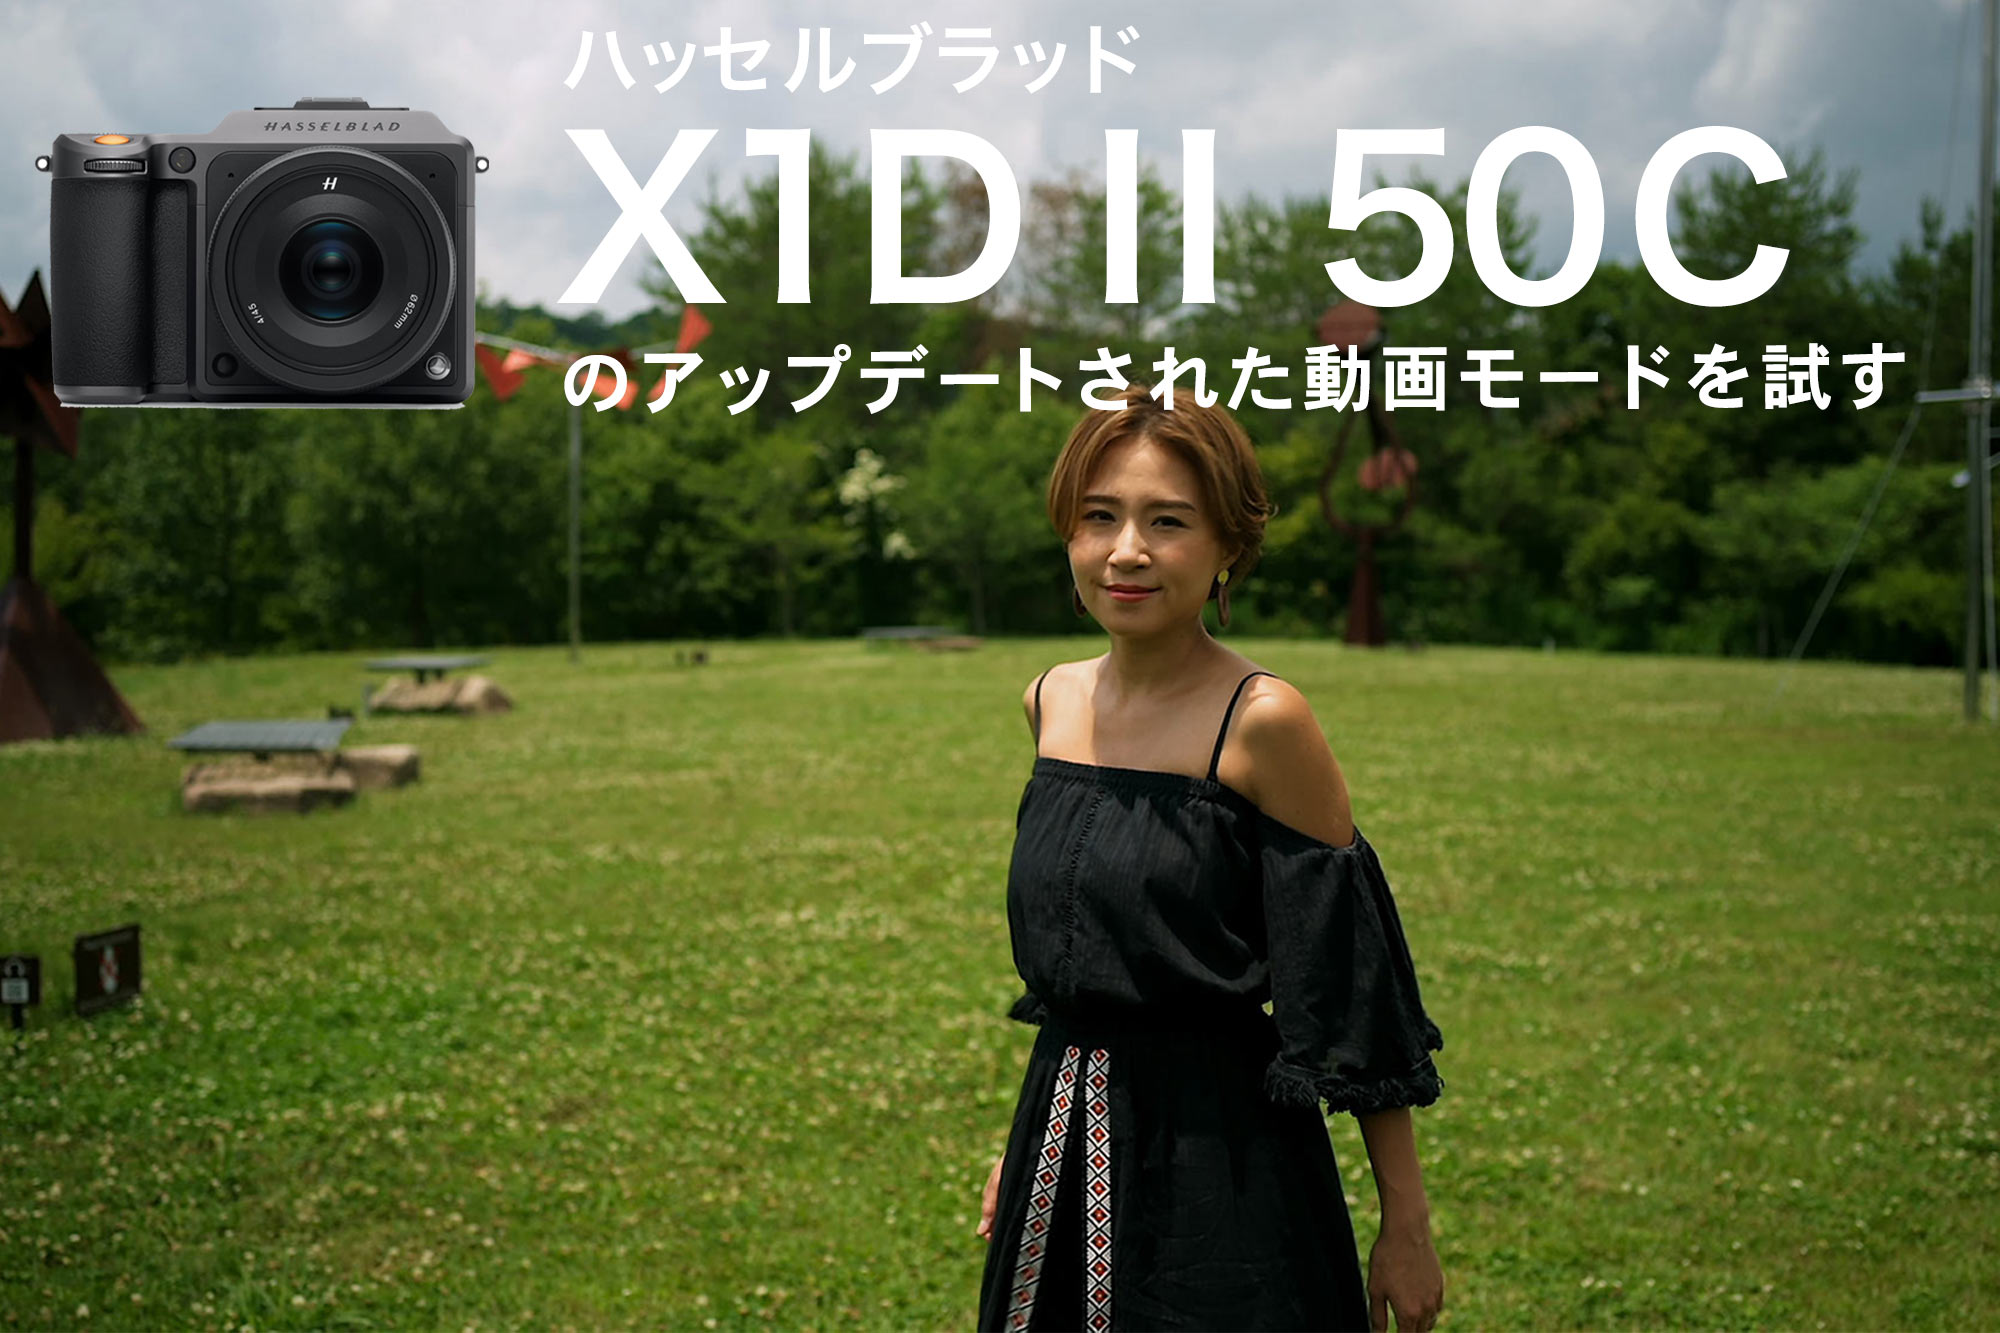 ハッセルブラッド X1D II 50Cのアップデートされた動画モードを試す | VIDEO SALON